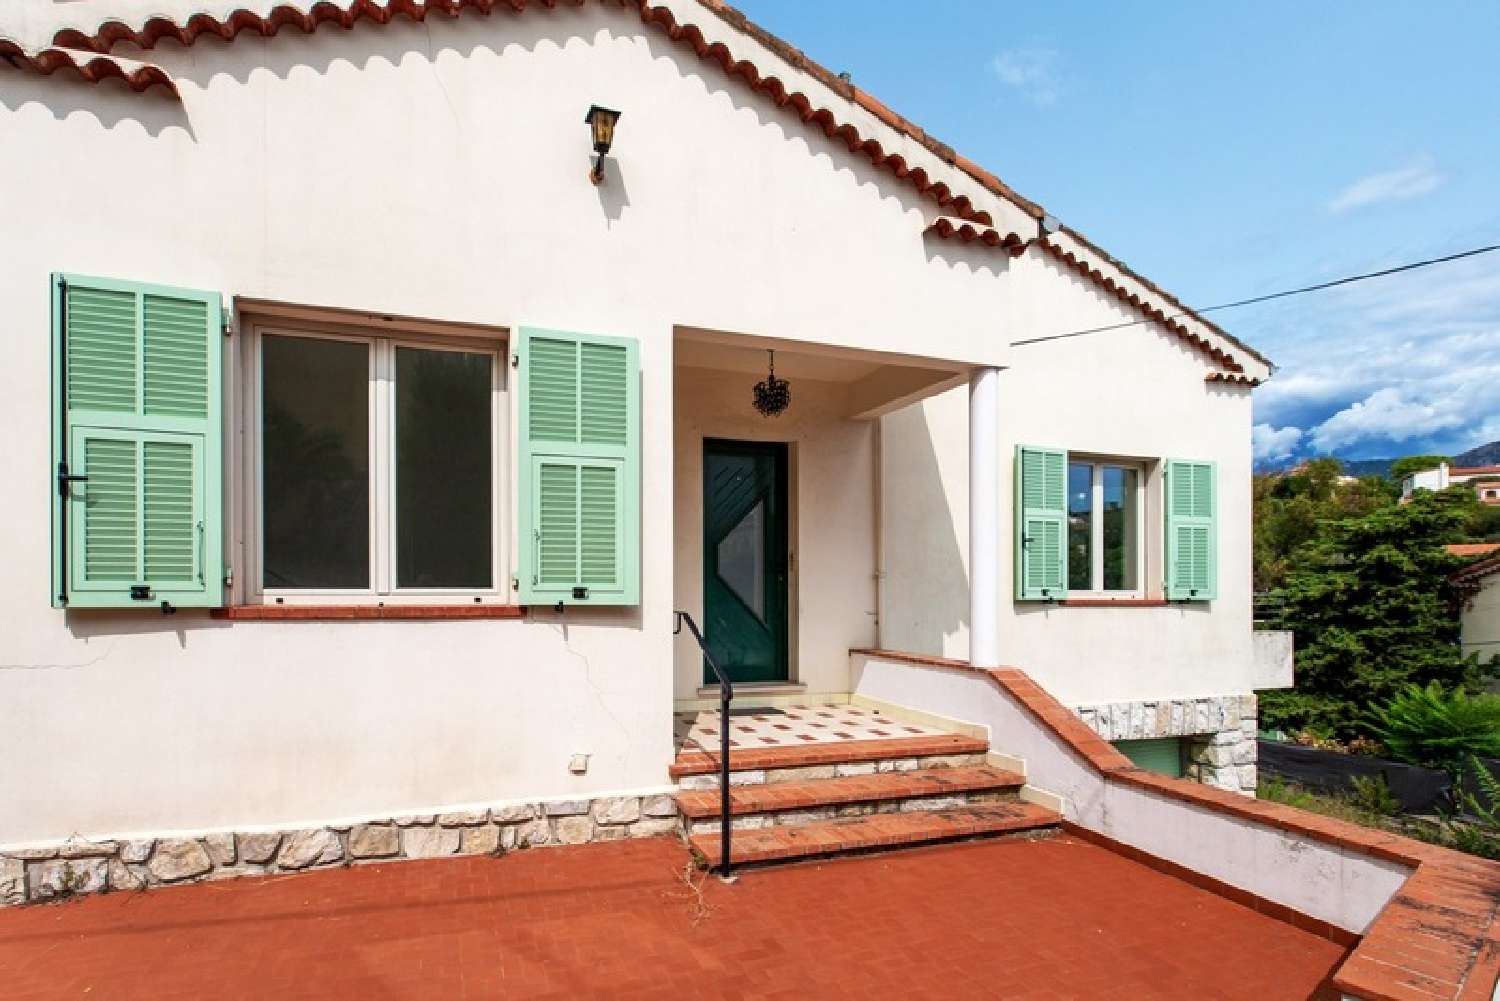  à vendre maison Roquebrune-Cap-Martin Alpes-Maritimes 2